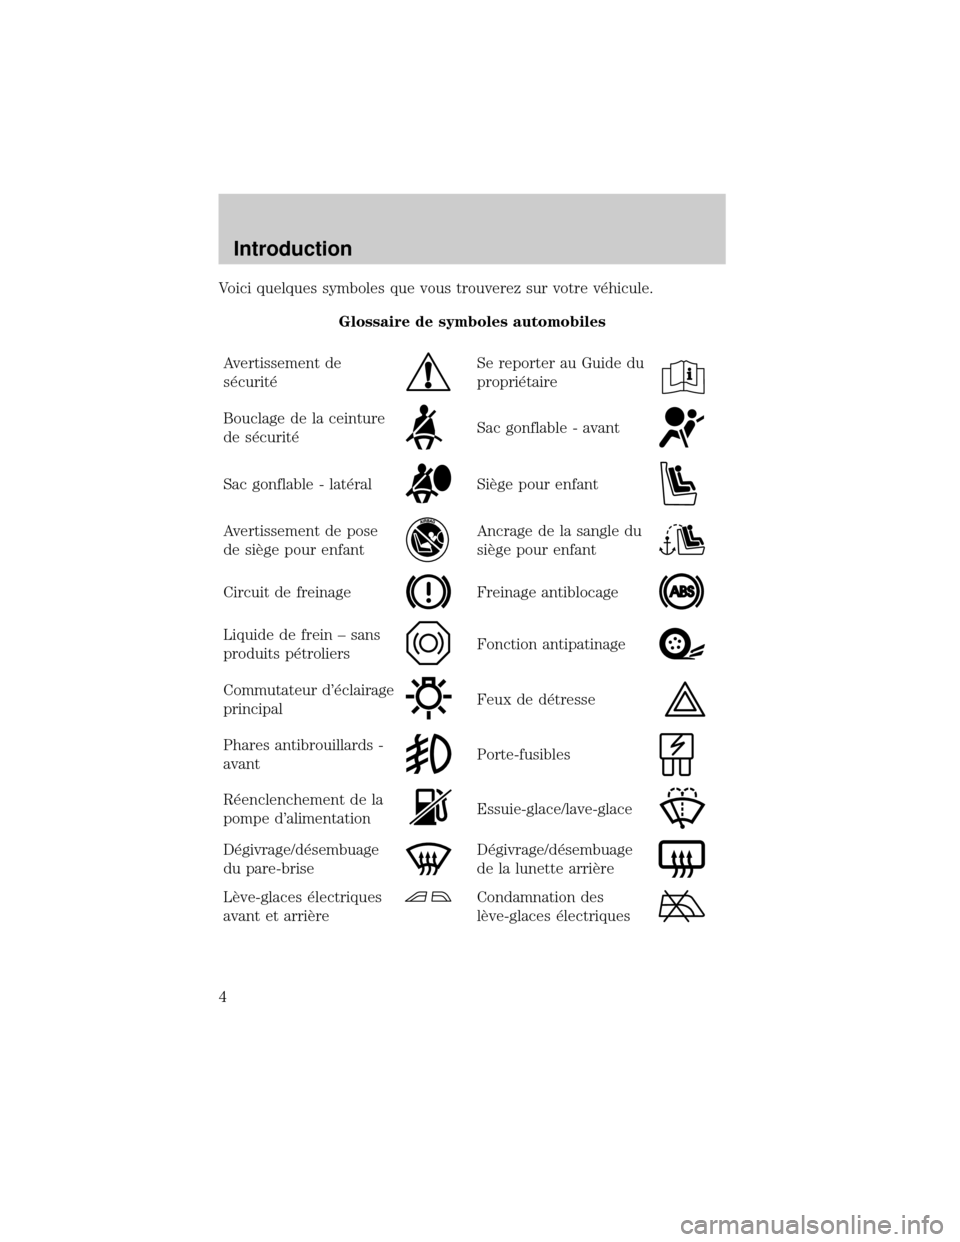 FORD EXCURSION 2001 1.G Owners Manual Voici quelques symboles que vous trouverez sur votre v×hicule.
Glossaire de symboles automobiles
Avertissement de
s×curit×
Se reporter au Guide du
propri×taire
Bouclage de la ceinture
de s×curit�